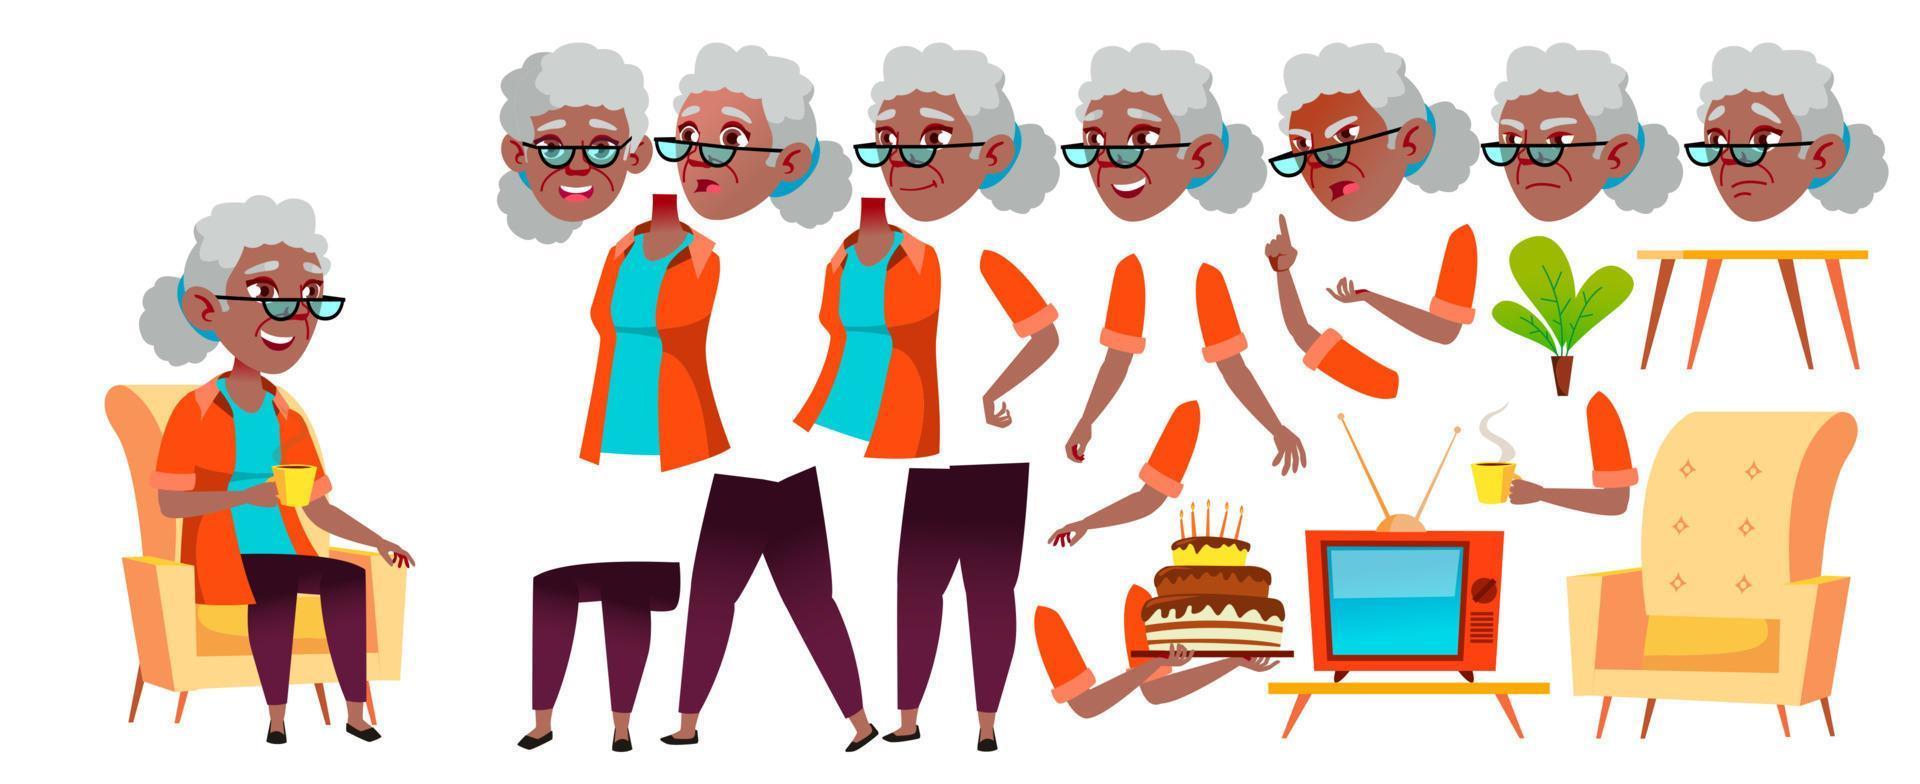 Vektor der alten Frau. Schwarz. Afroamerikaner. Porträt einer älteren Person. ältere Menschen. alt. Animationserstellungsset. Gesicht Emotionen, Gesten. freundliche Großeltern. animiert. isolierte Abbildung